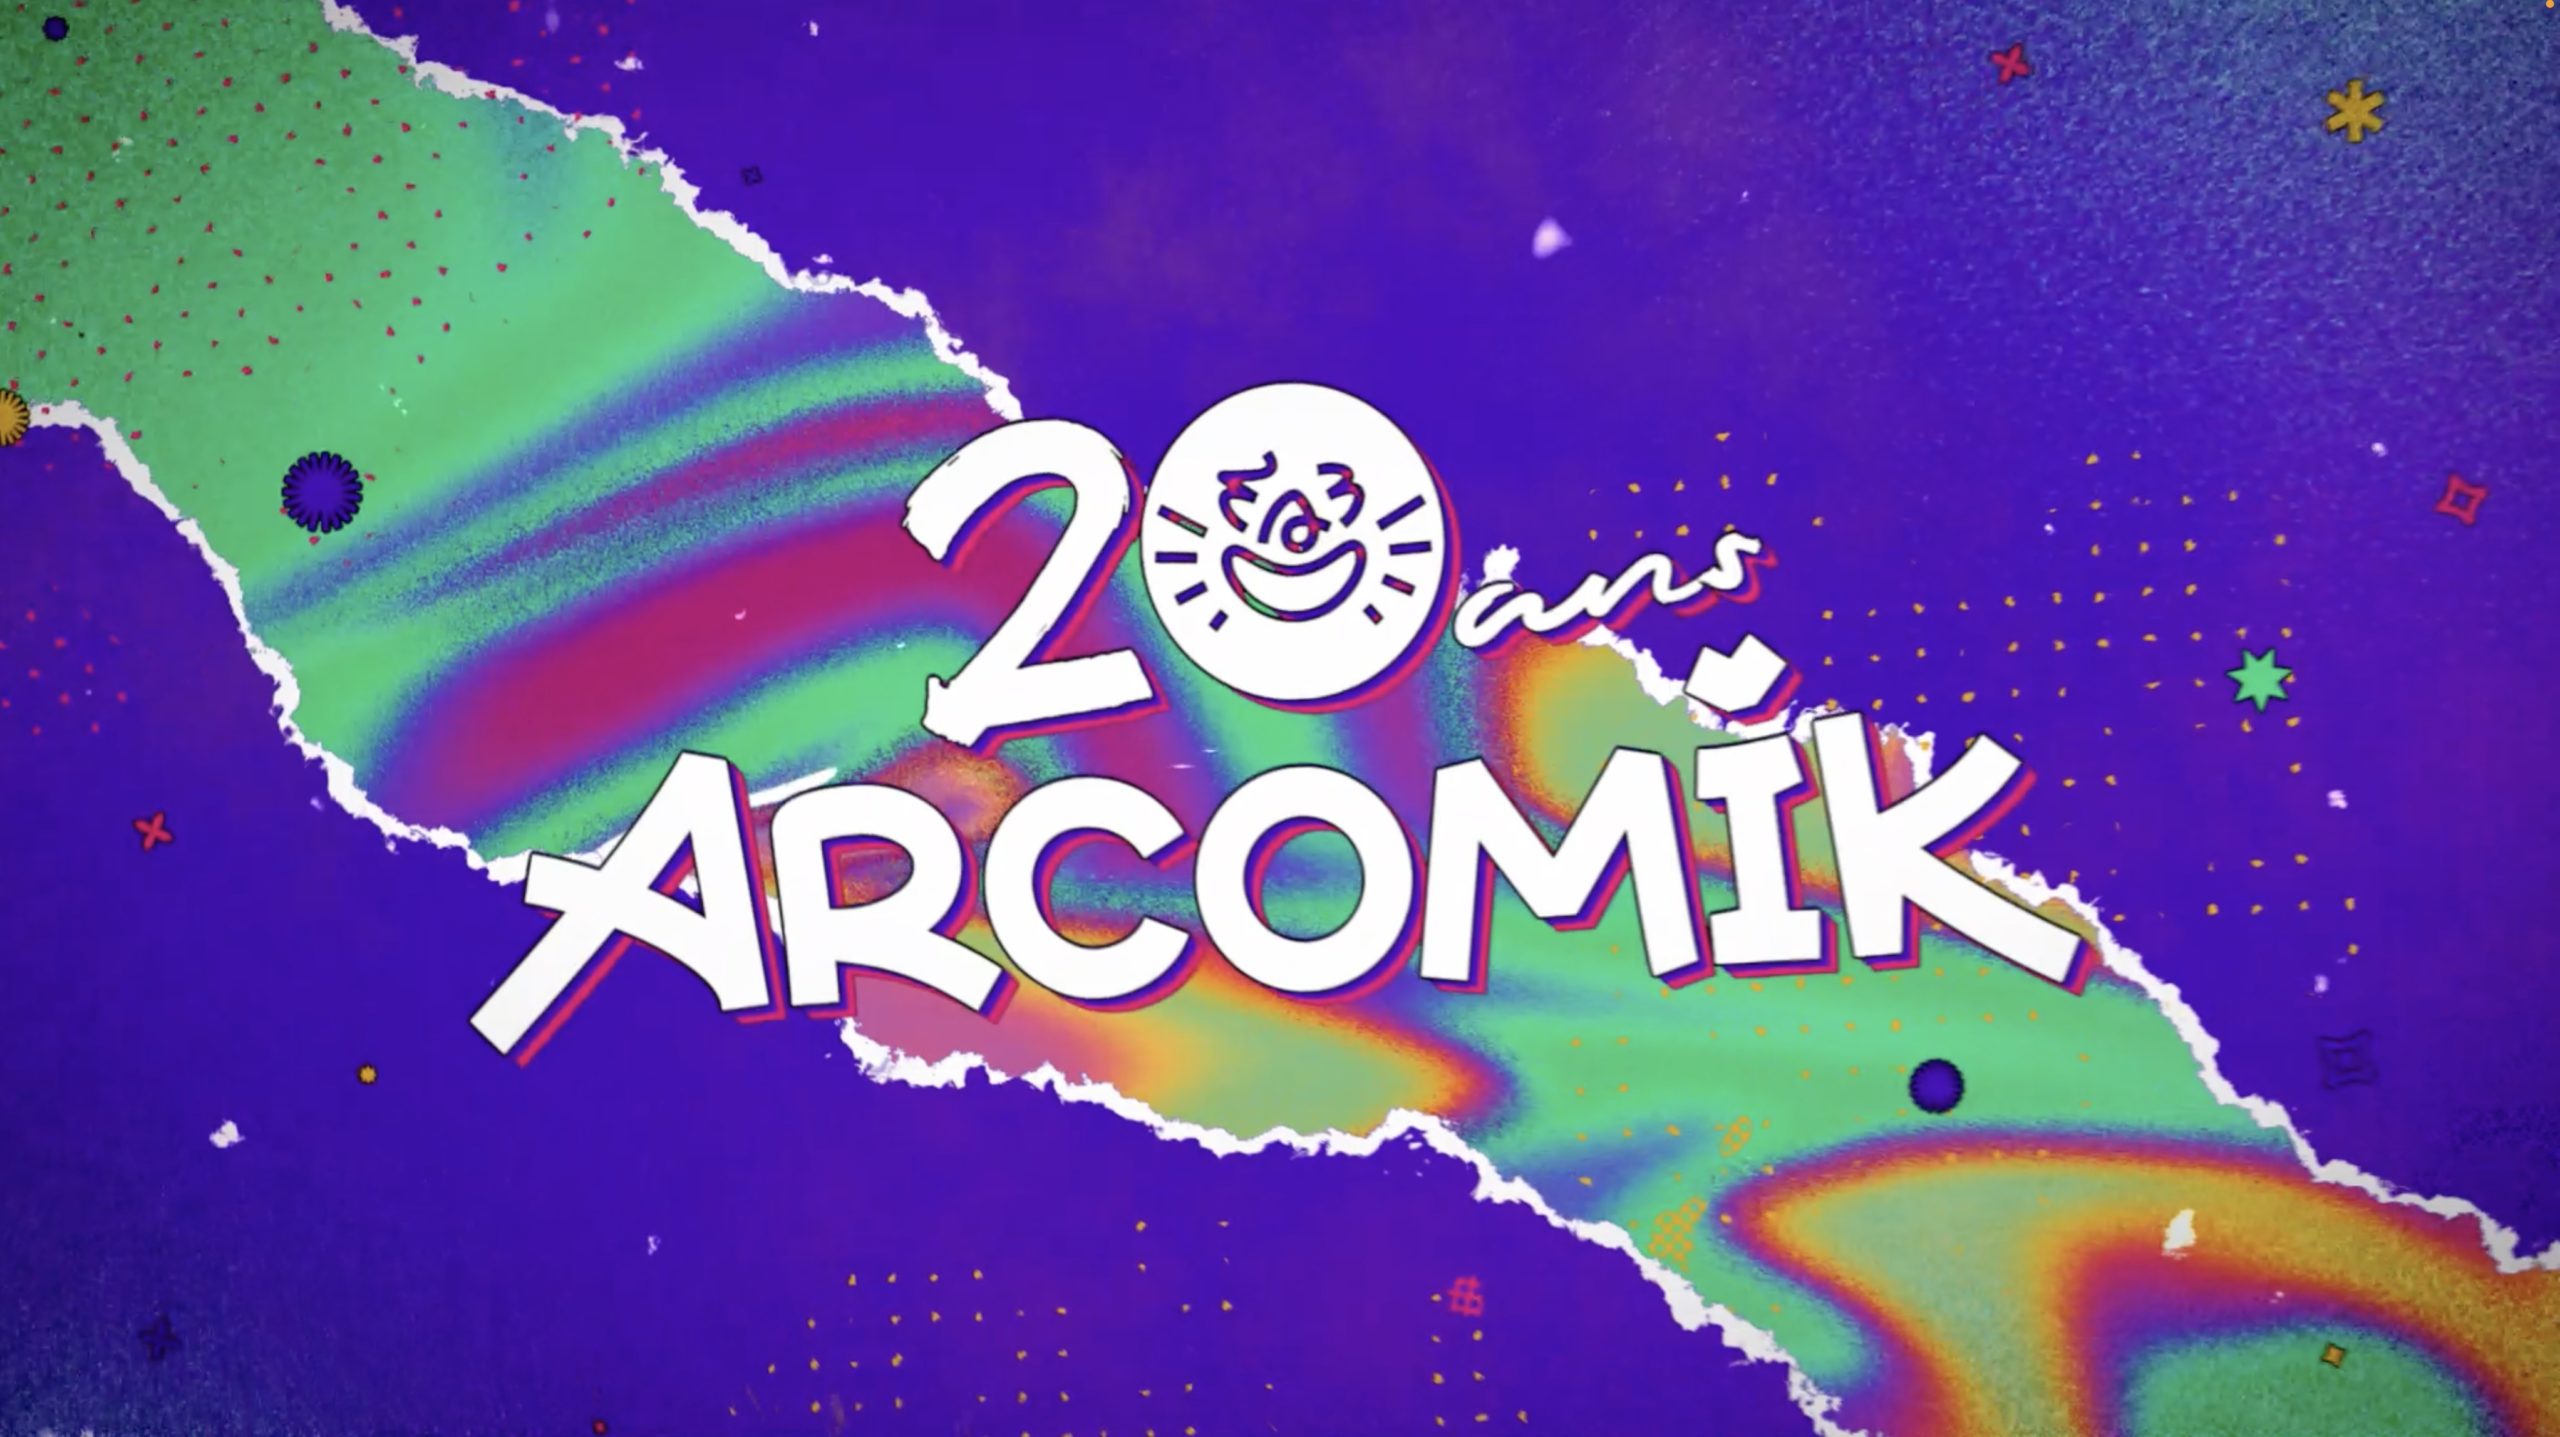 ArcomiK fête ses 20 ans en février 2023 et on a sélectionné le meilleur pour célébrer cet événement !